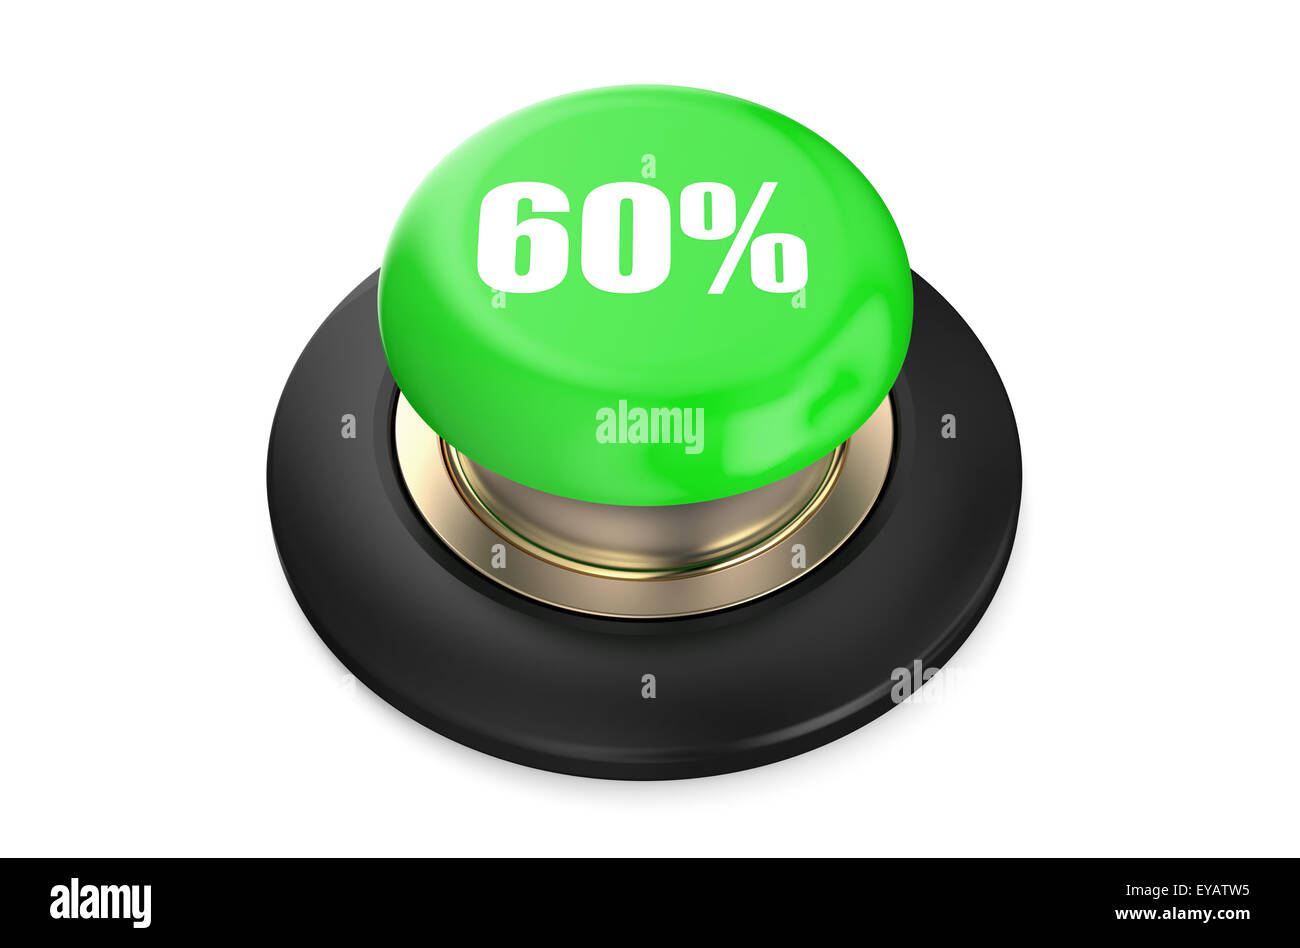 60 percento di sconto pulsante verde isolato su sfondo bianco Foto Stock